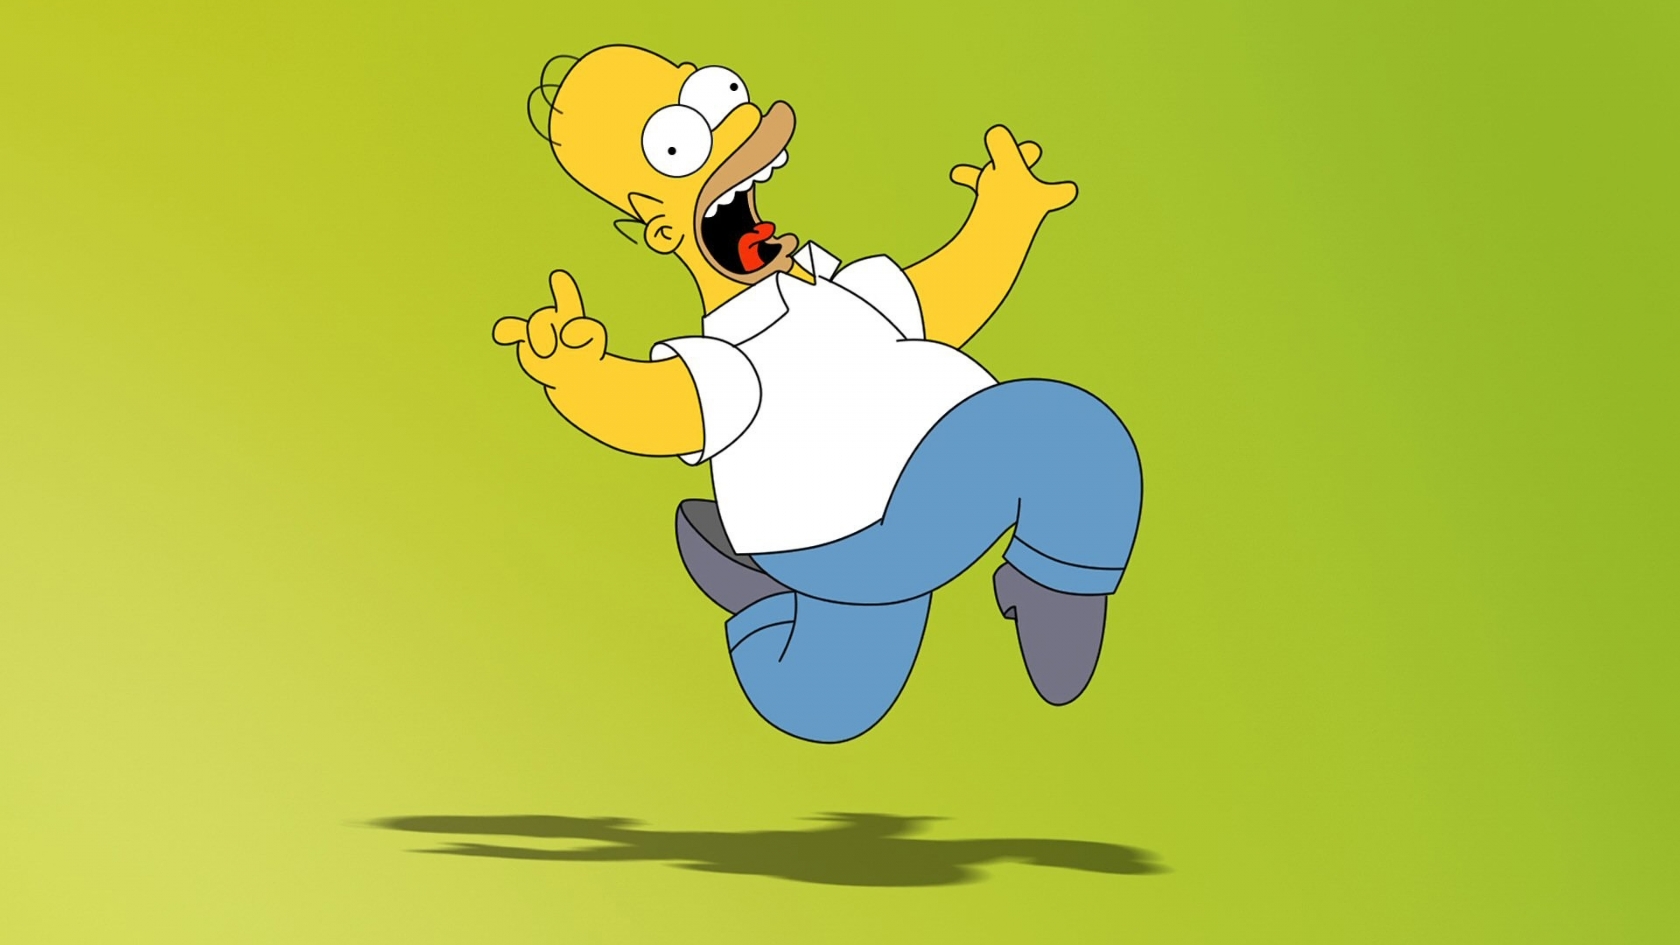 Homer Simpson for 1680 x 945 HDTV resolution